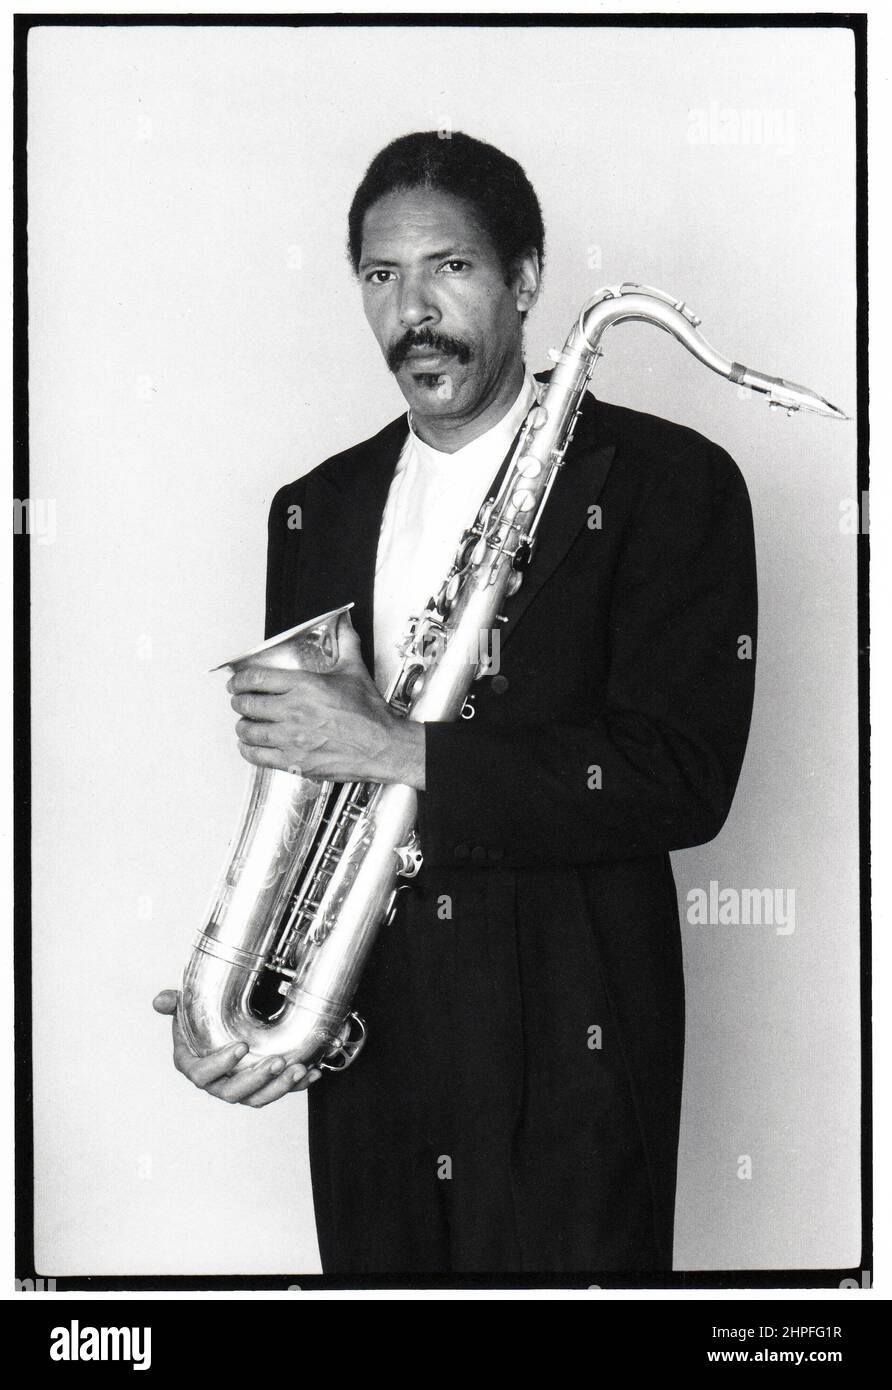 Posierte Porträt des späten Jazz-Komponisten und Tenorsaxophonisten Frank Lowe, aufgenommen 1982 in Brooklyn, New York. Stockfoto